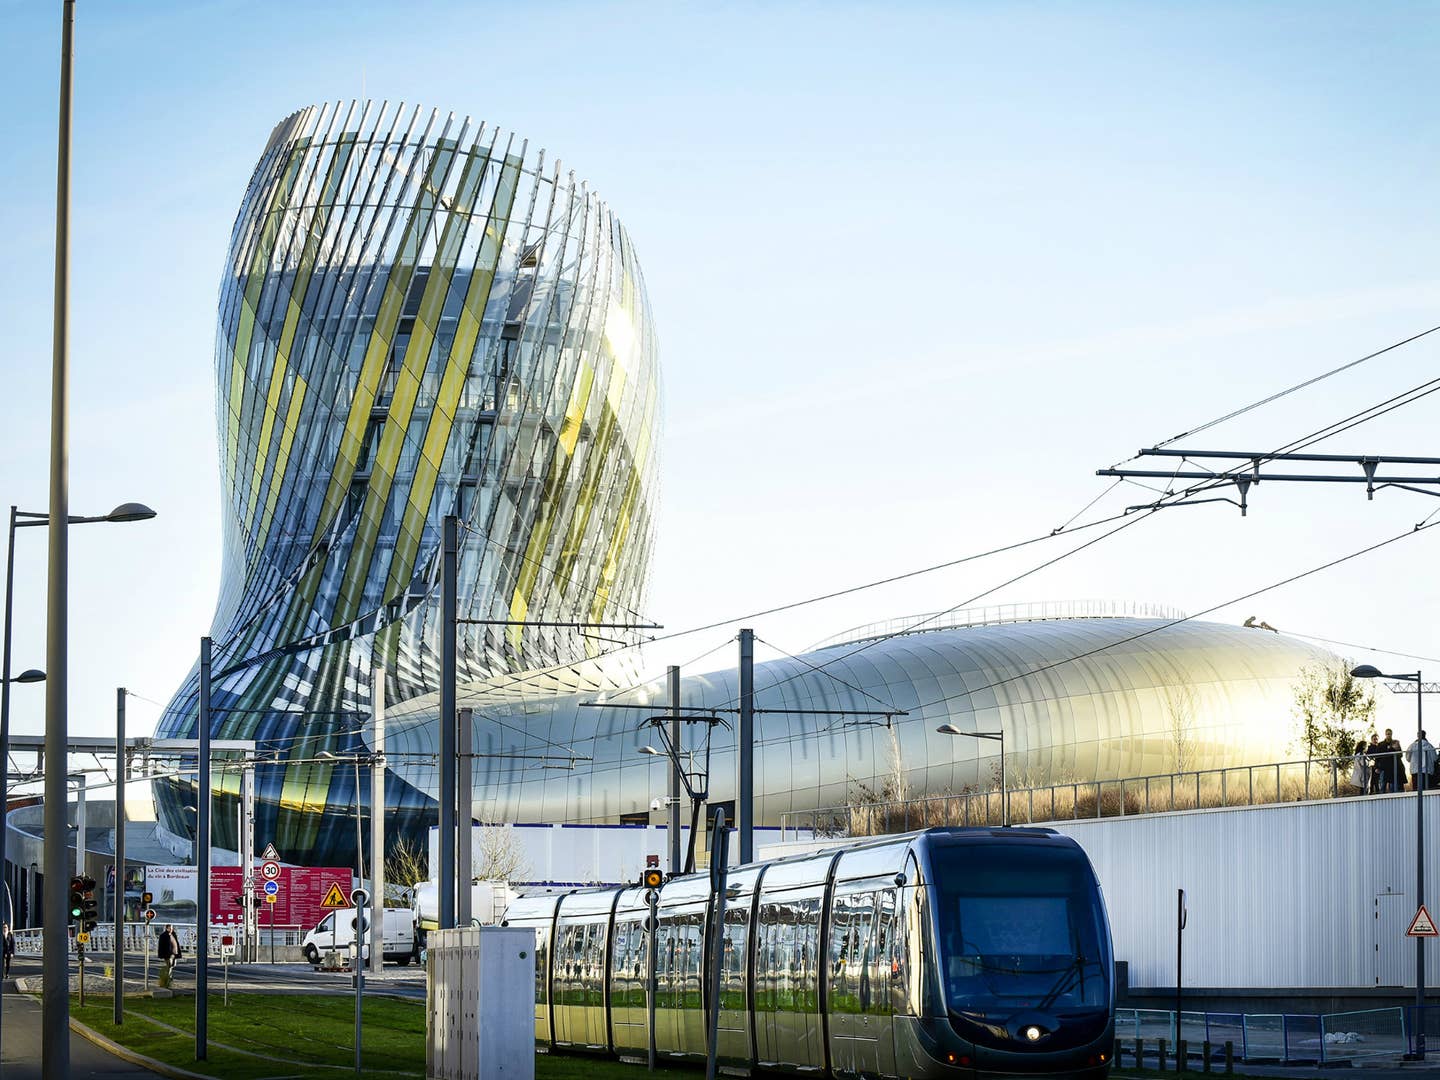 Bordeaux is France’s Next Great Food Destination